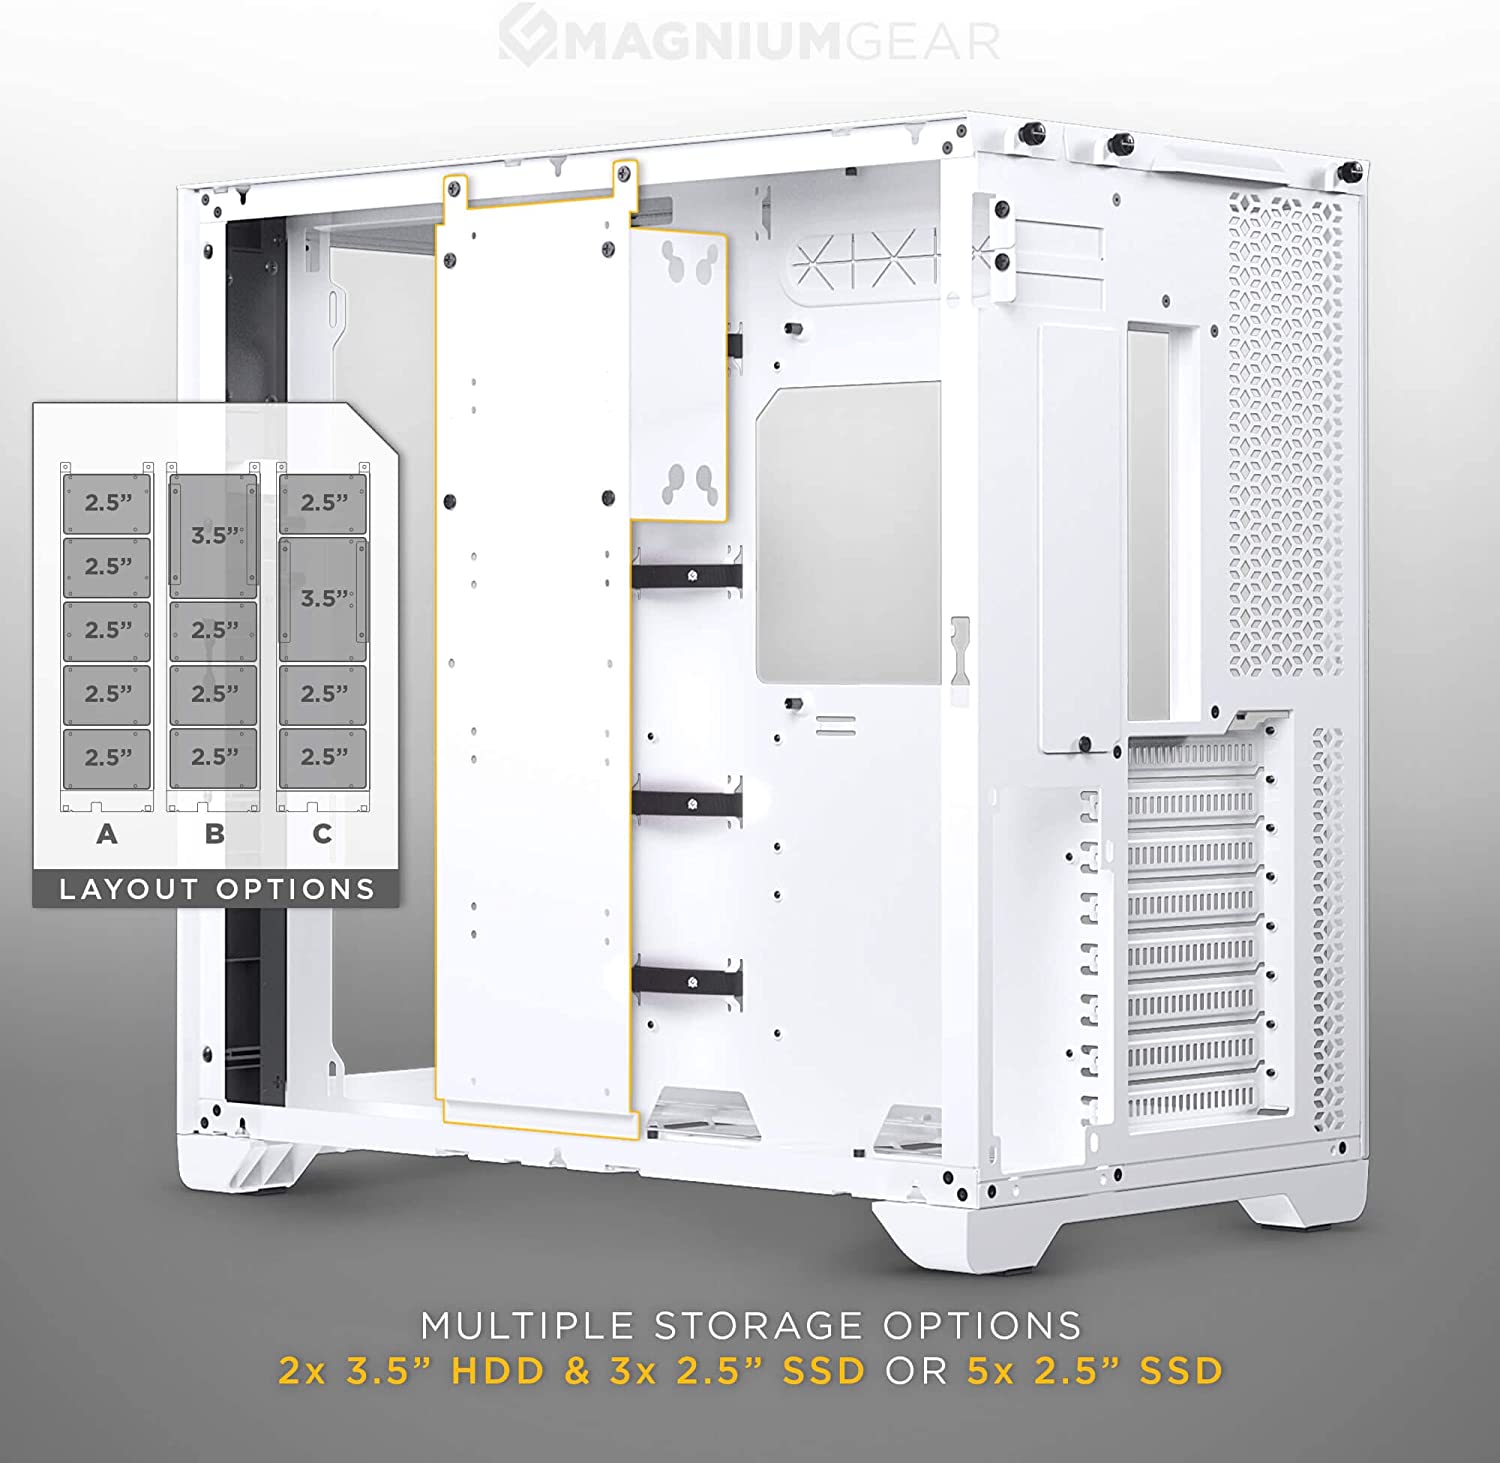 Phanteks MagniumGear Qube 2 Infinity Mirror E-ATX Full Tower Case